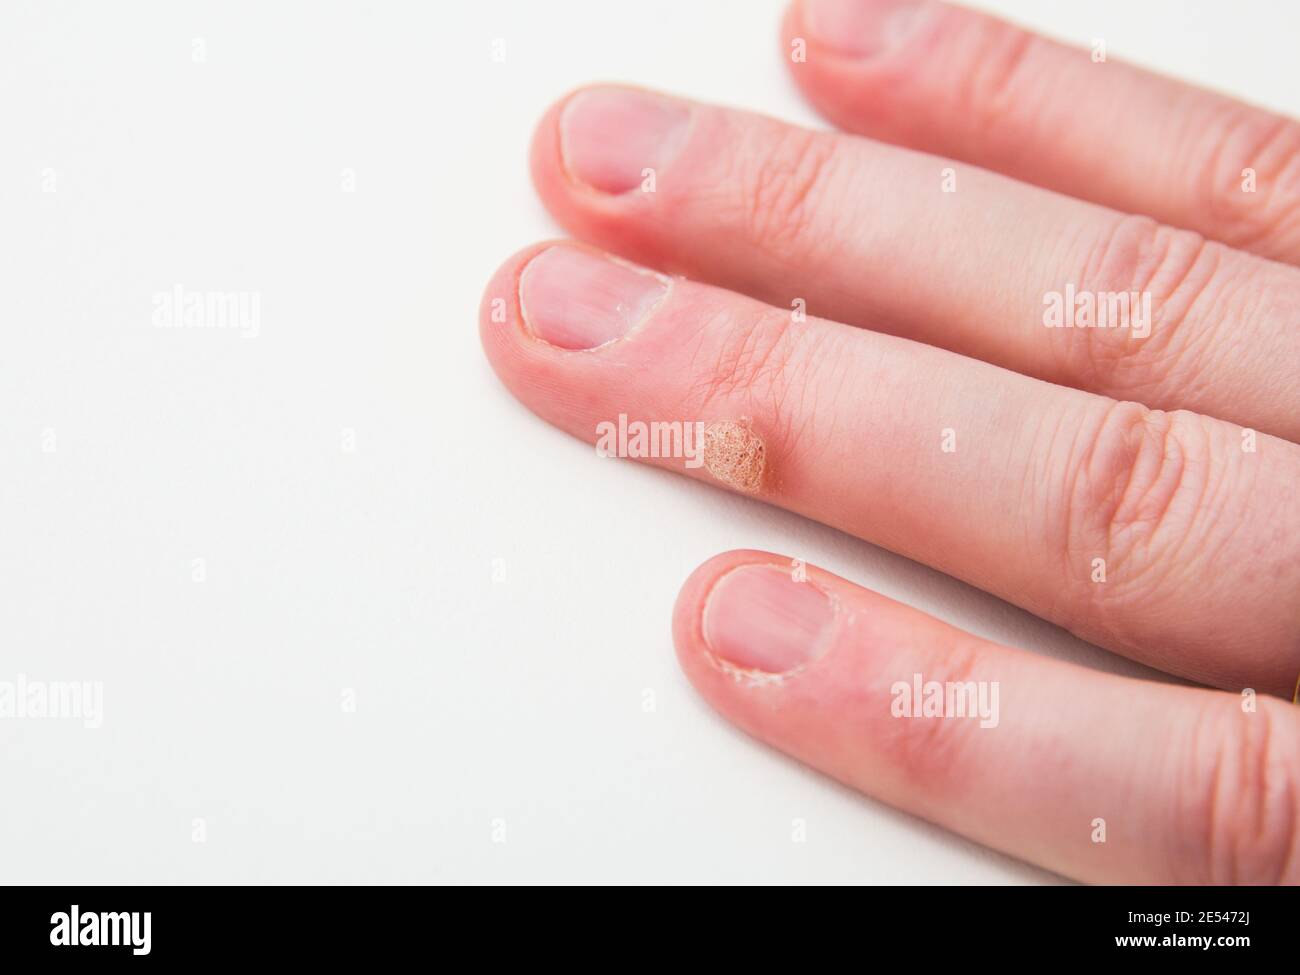 Vue rapprochée de la maladie de la peau appelée verrue causée par le virus du papillome humain sur le doigt humain. Banque D'Images